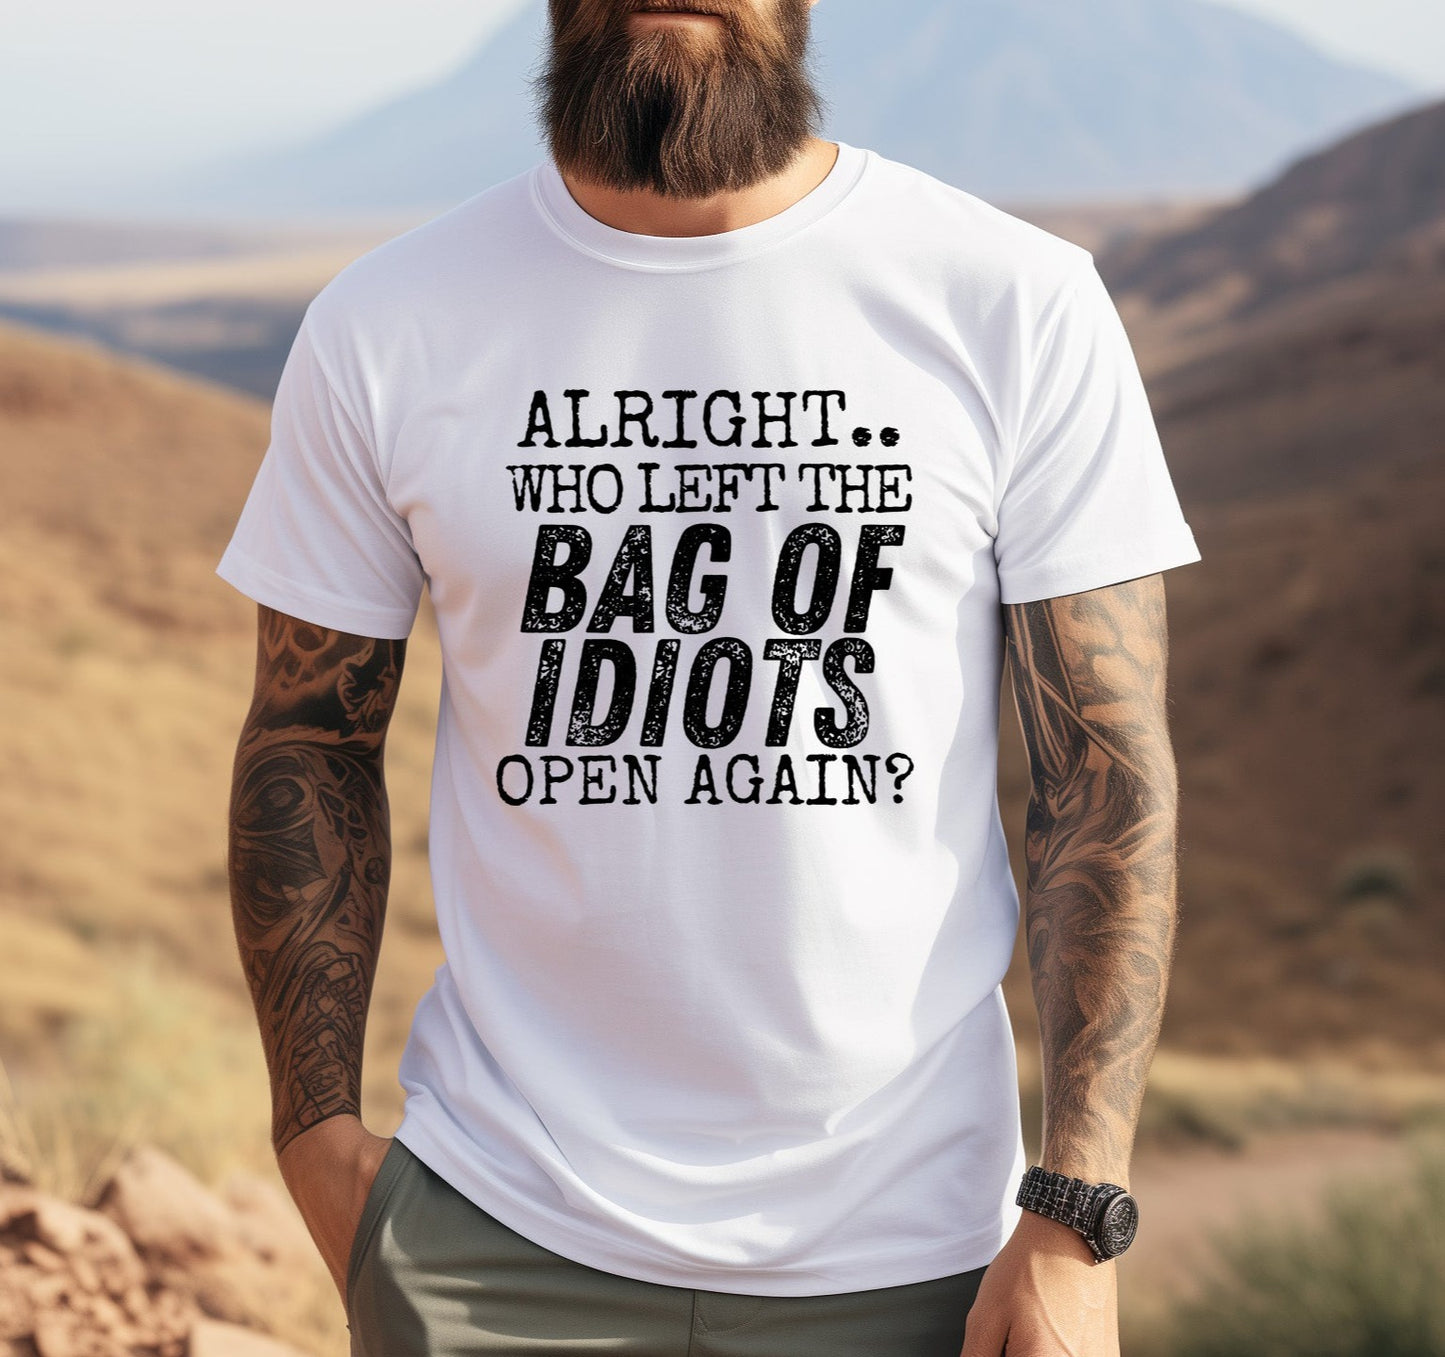 Bag of Idiots Men's Short Sleeve T-Shirt